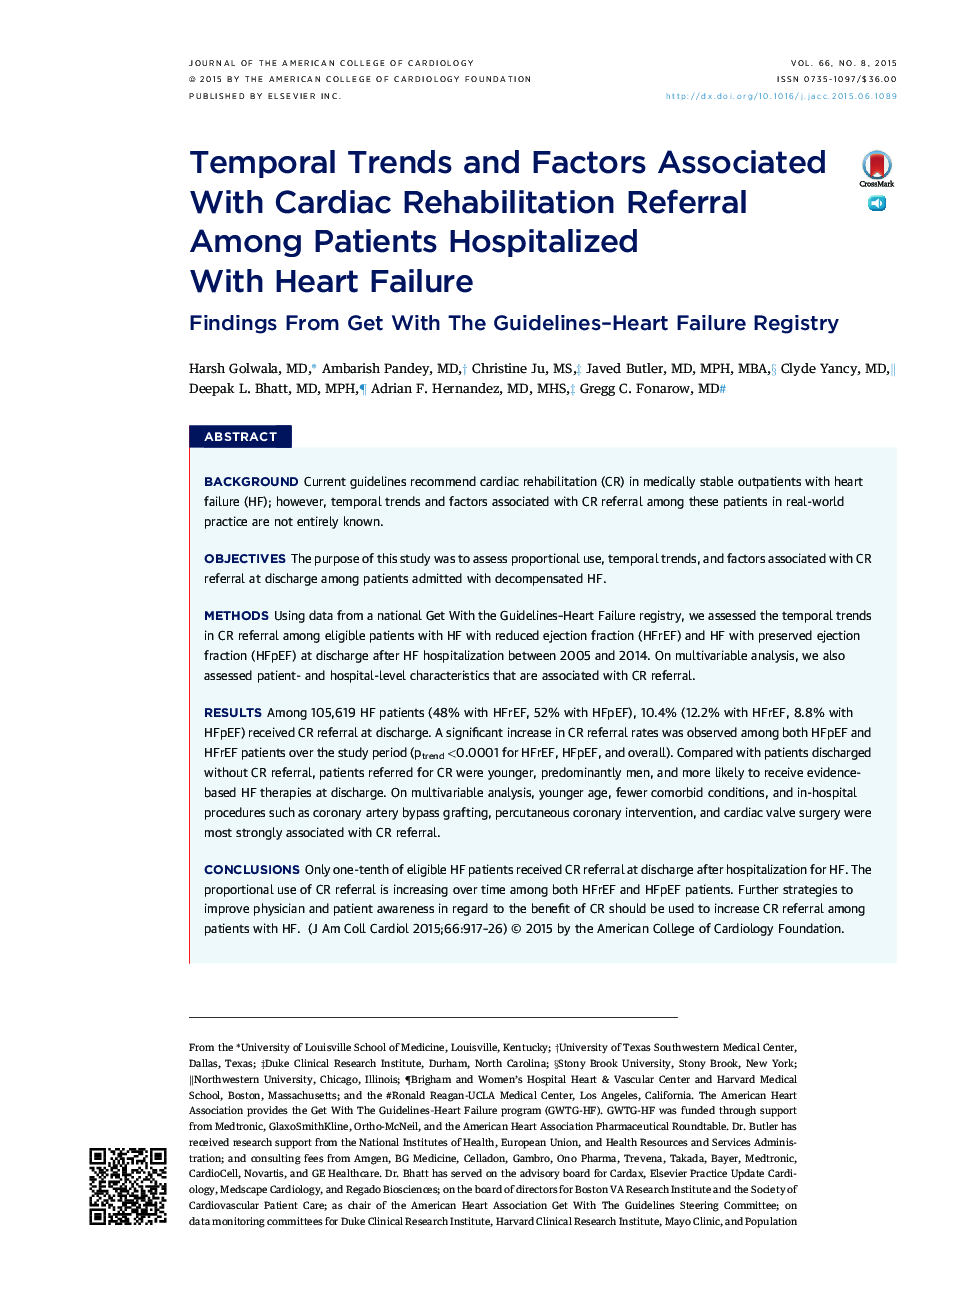 روند زمانی و عوامل مرتبط با توانبخشی قلب در میان بیماران بستری شده با نارسایی قلب: یافته های مربوط به رجیستری 